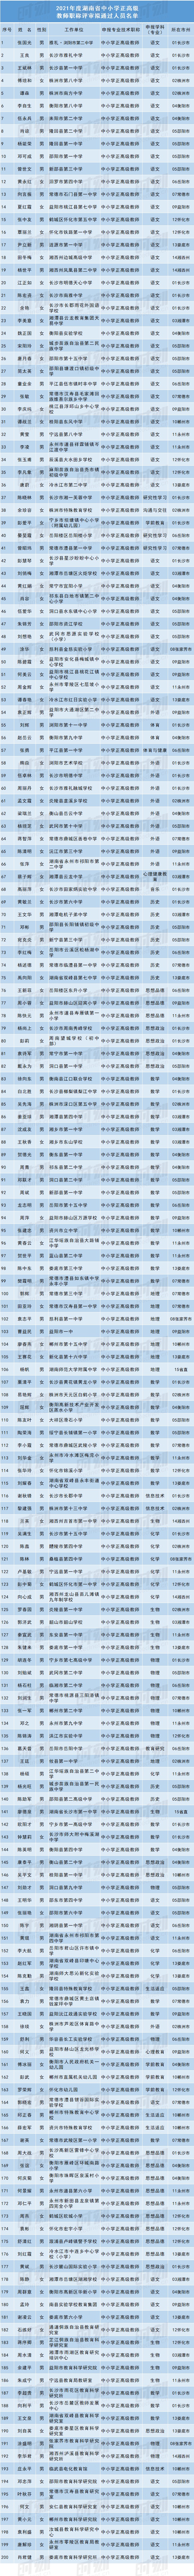 湖南200名中小学教师拟获评正高级职称，有你的老师吗？